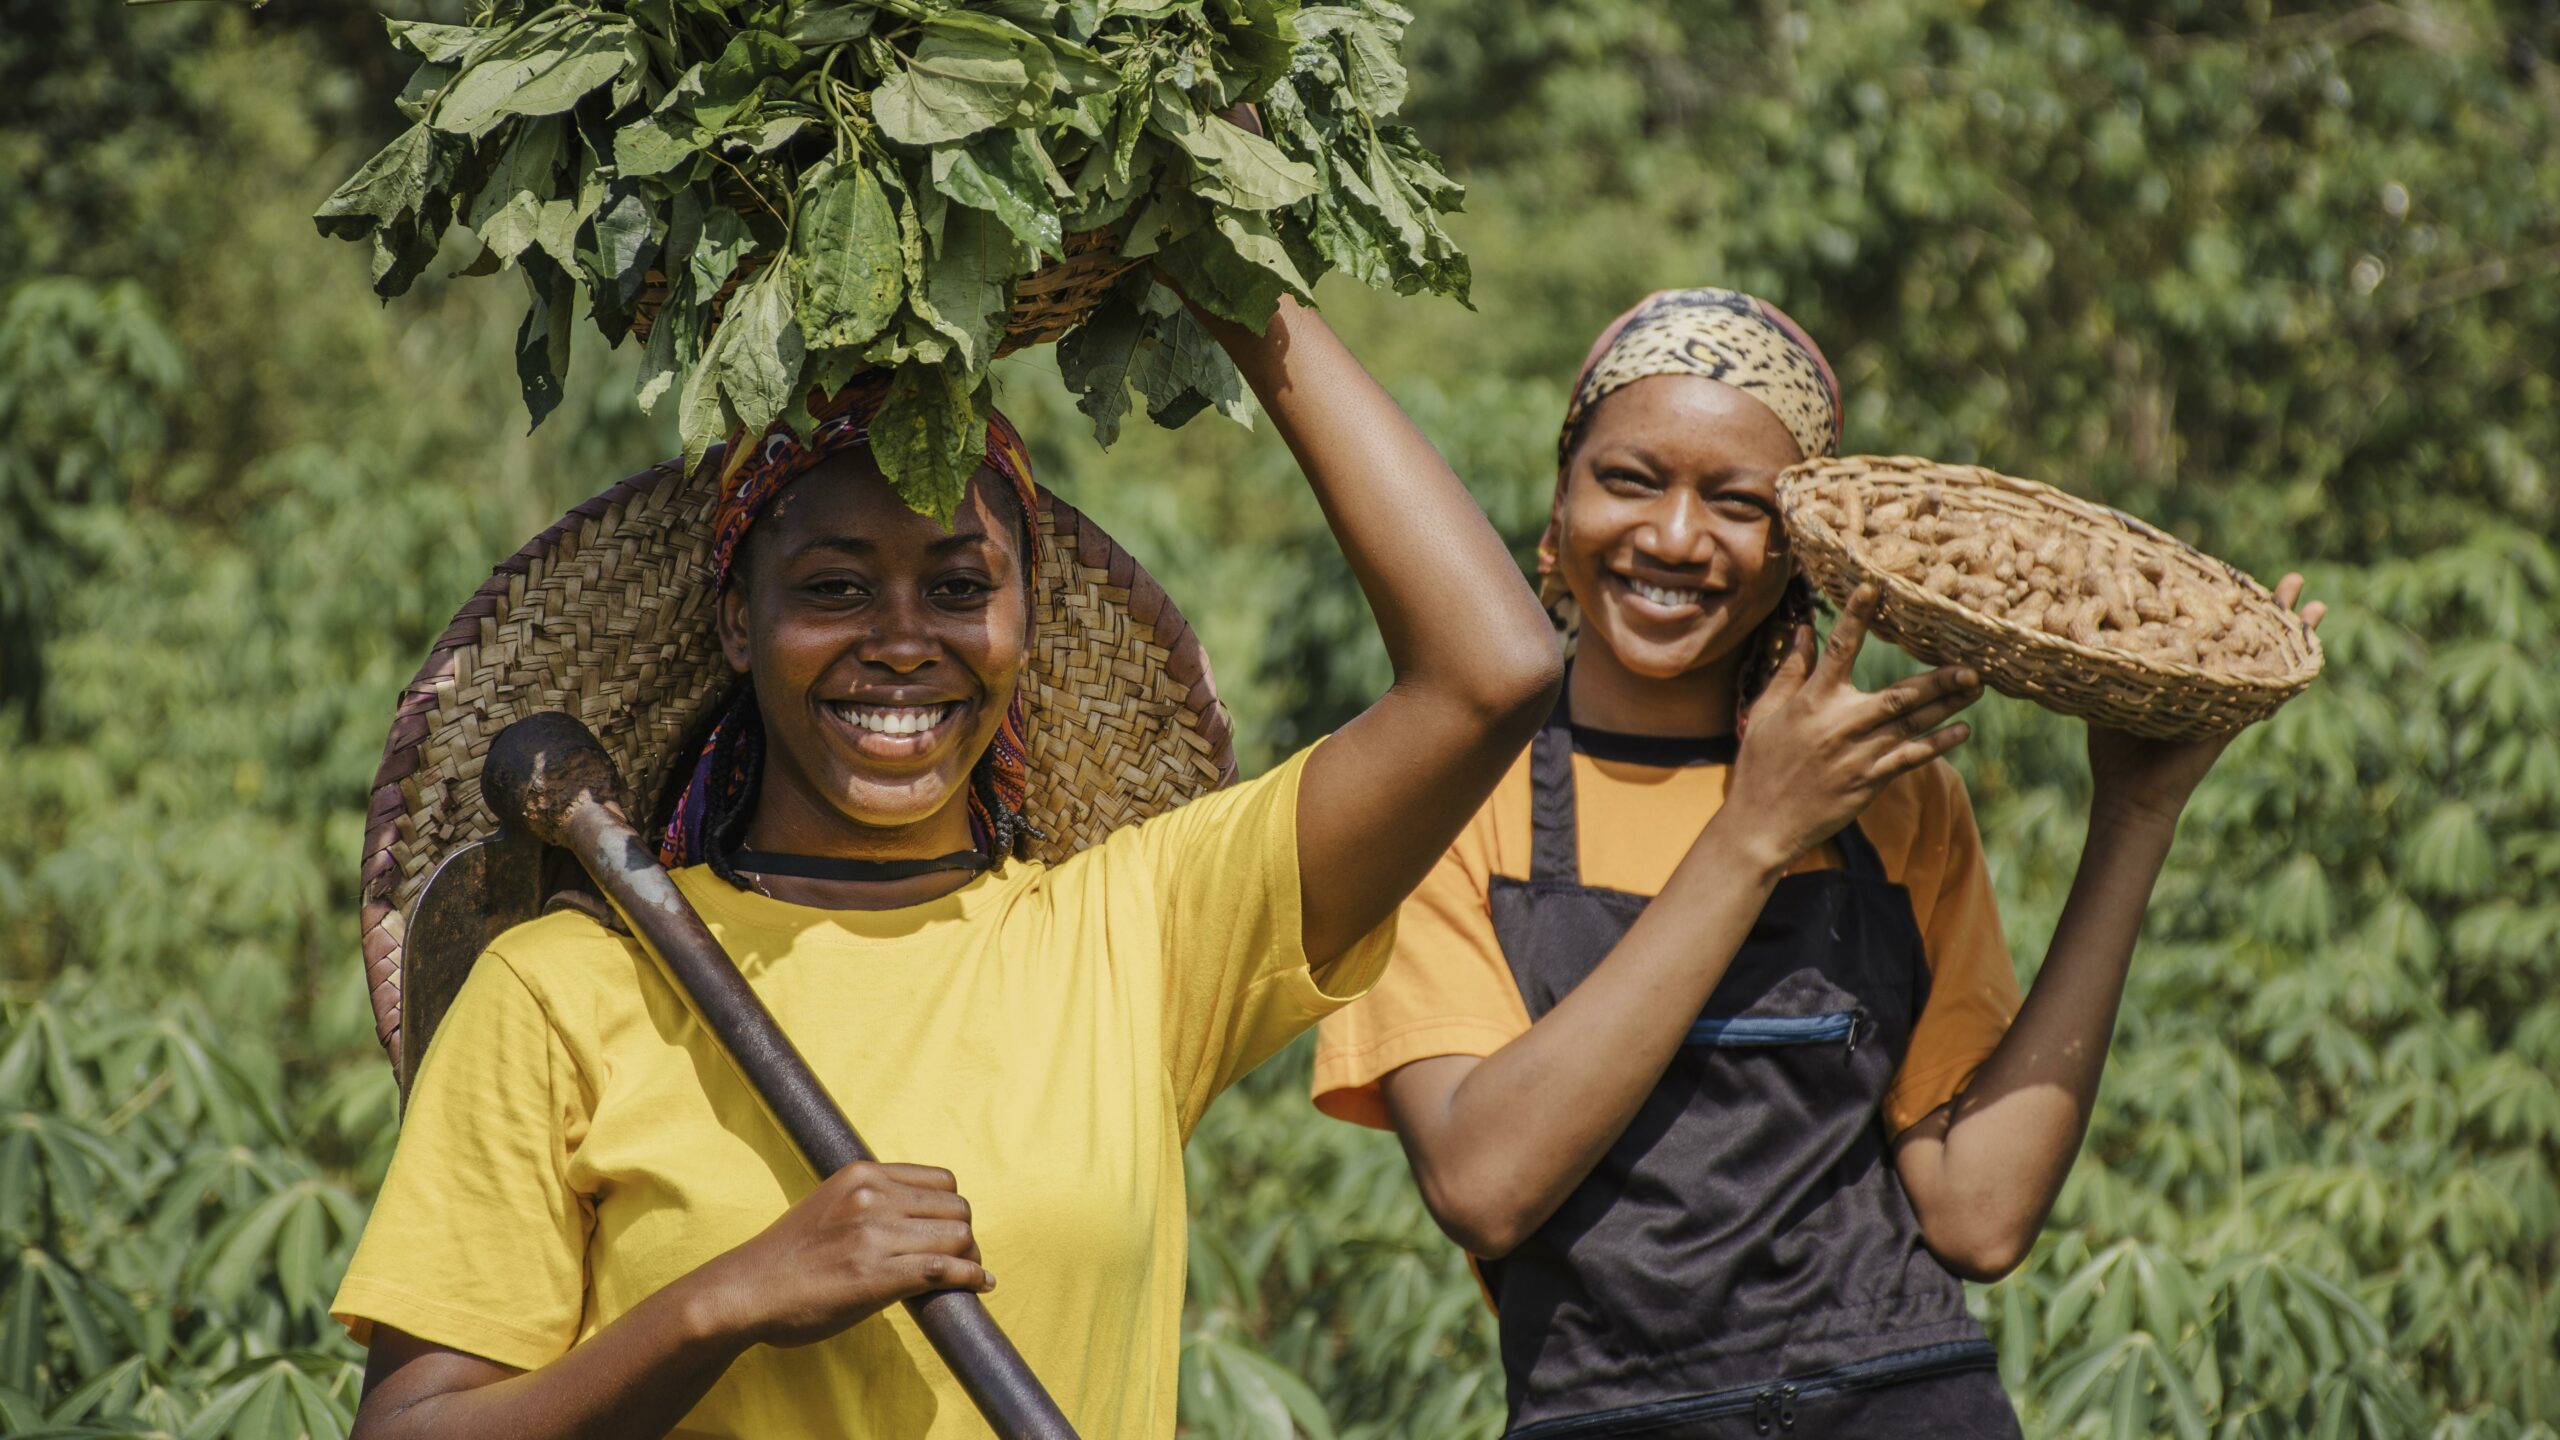 agricoltura moderna: donne africane raccolgono prodotti nei campi